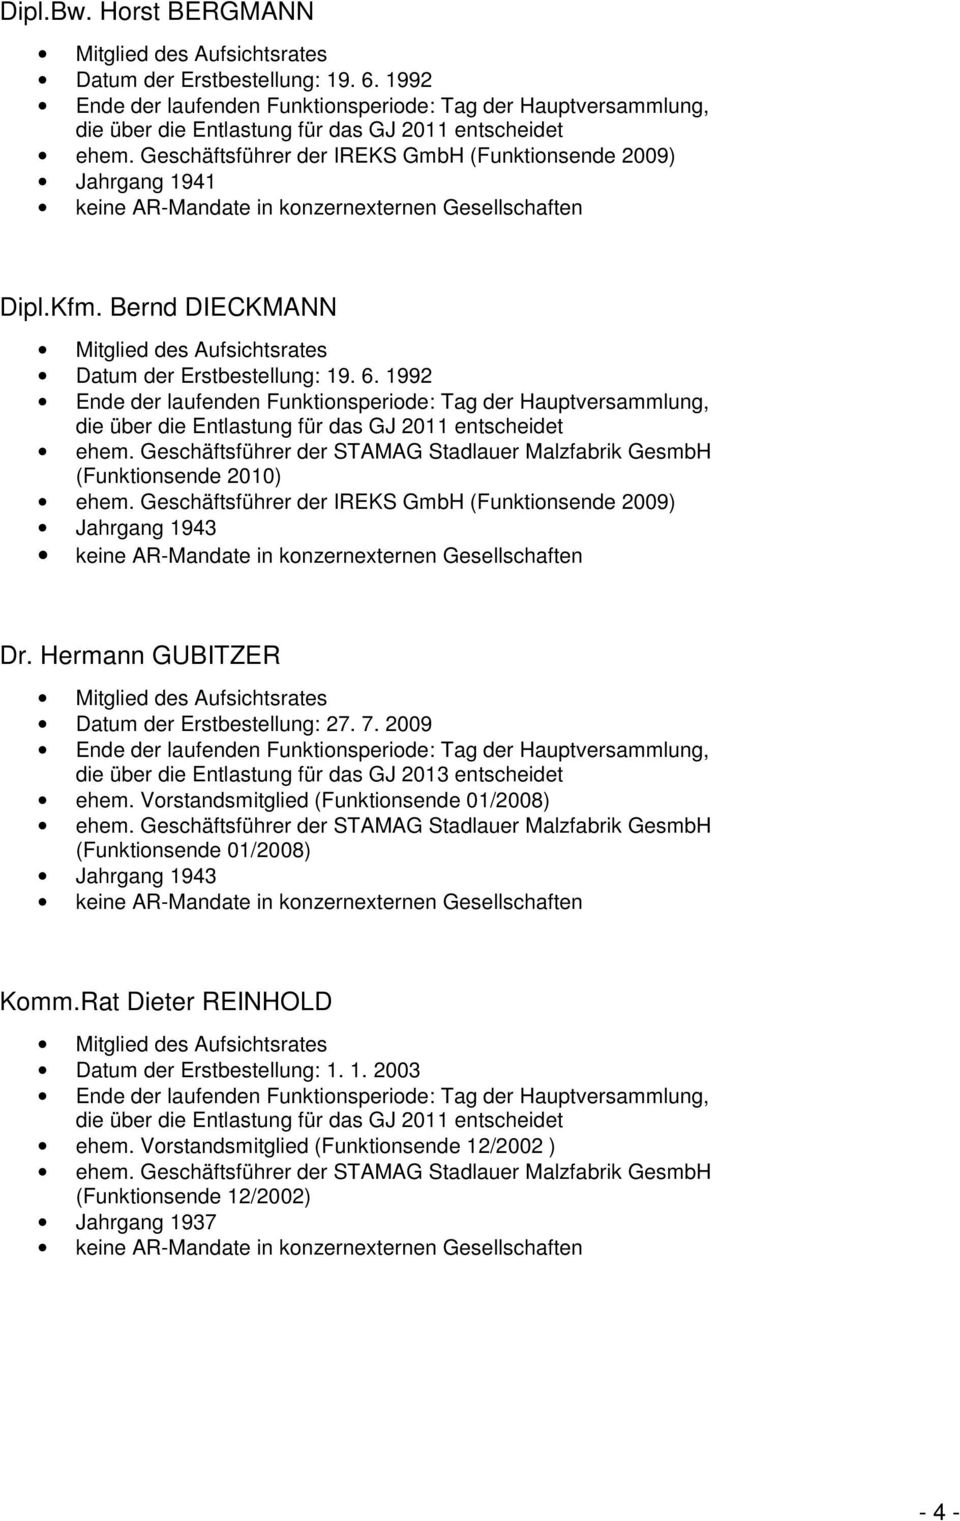 Geschäftsführer der IREKS GmbH (Funktionsende 2009) Jahrgang 1943 Dr. Hermann GUBITZER Datum der Erstbestellung: 27. 7. 2009 die über die Entlastung für das GJ 2013 entscheidet ehem.